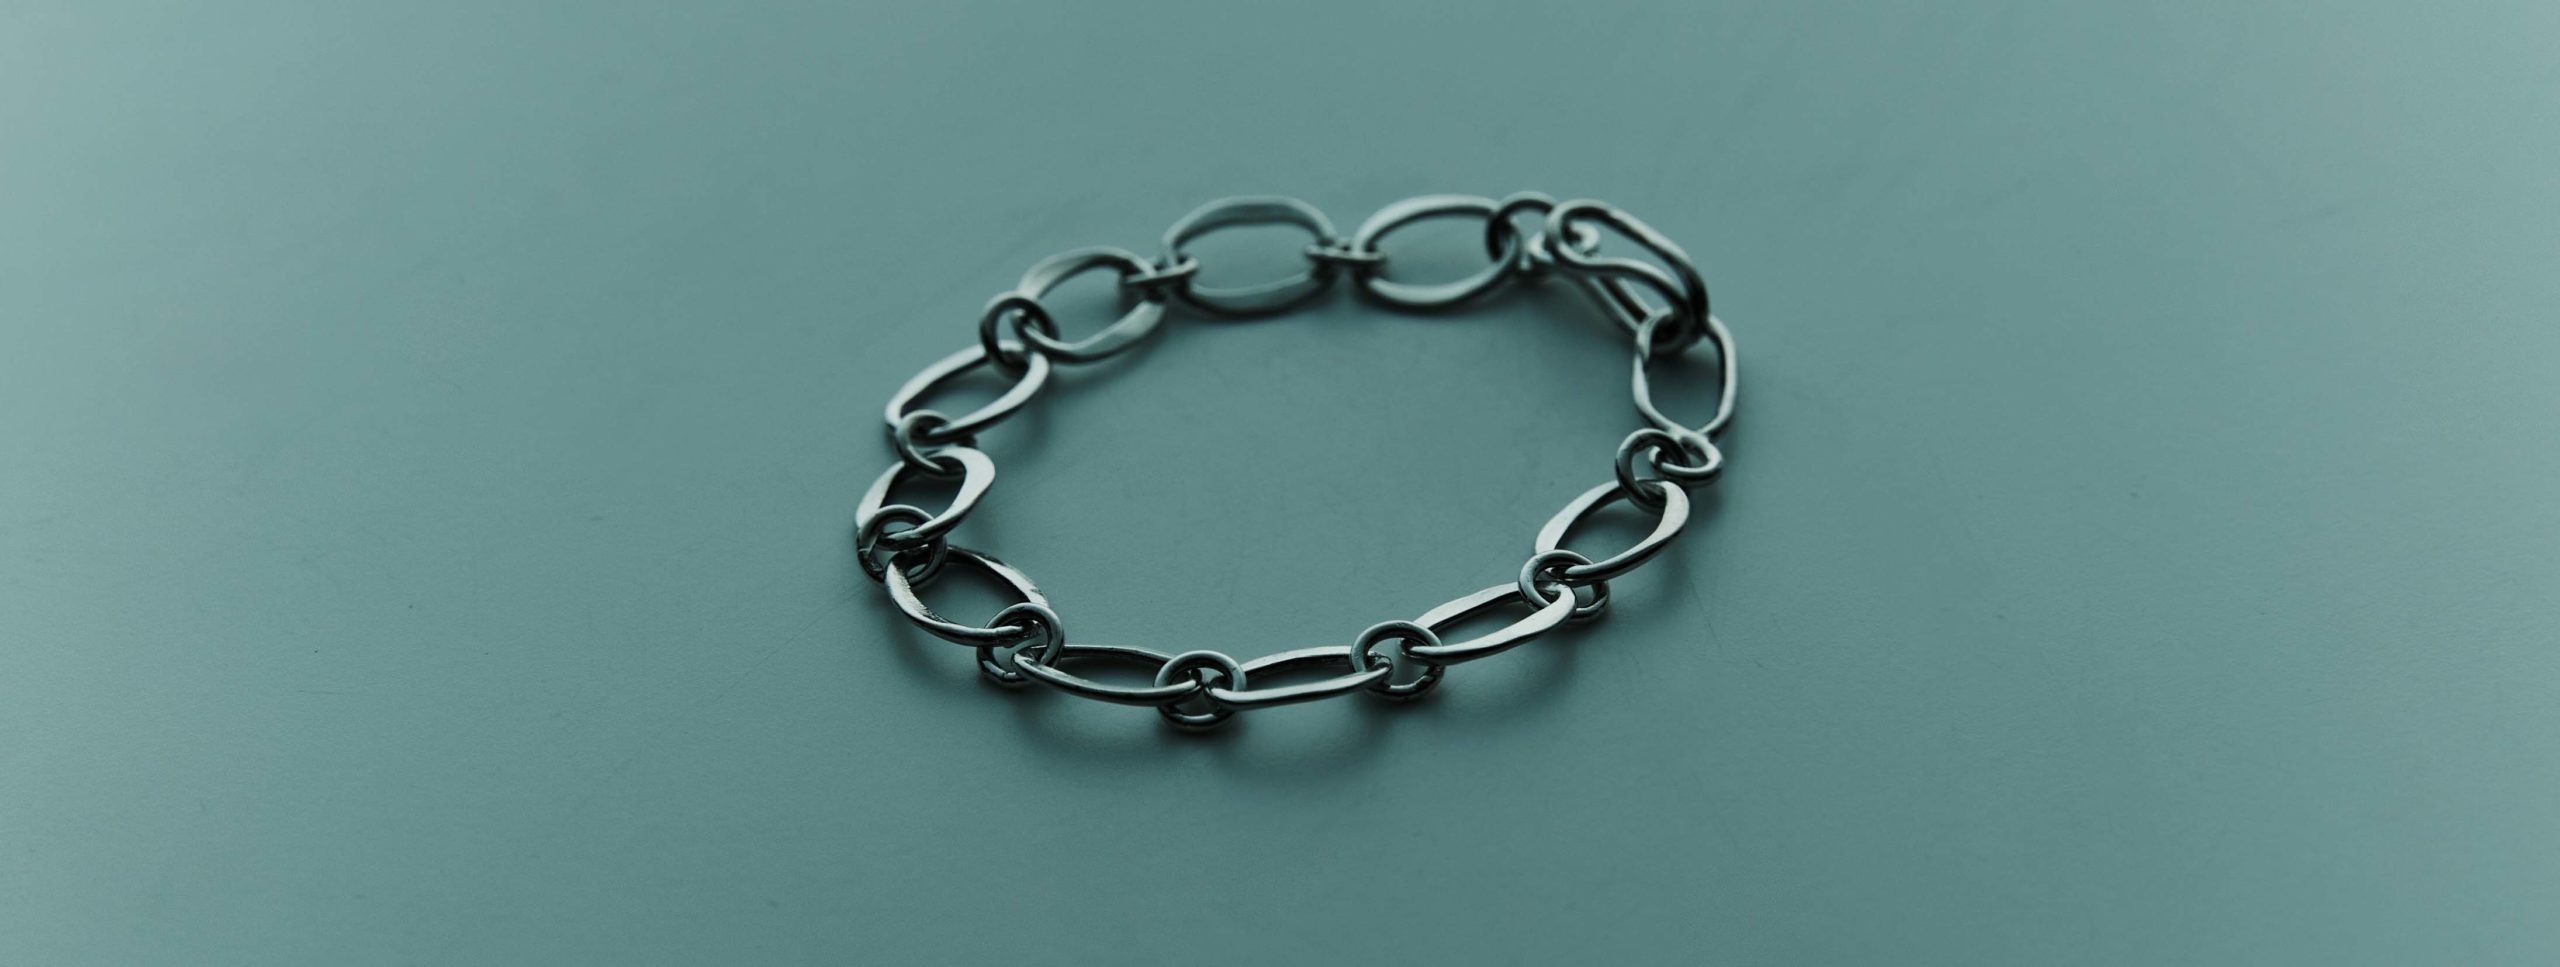 hummered link chain bracelet